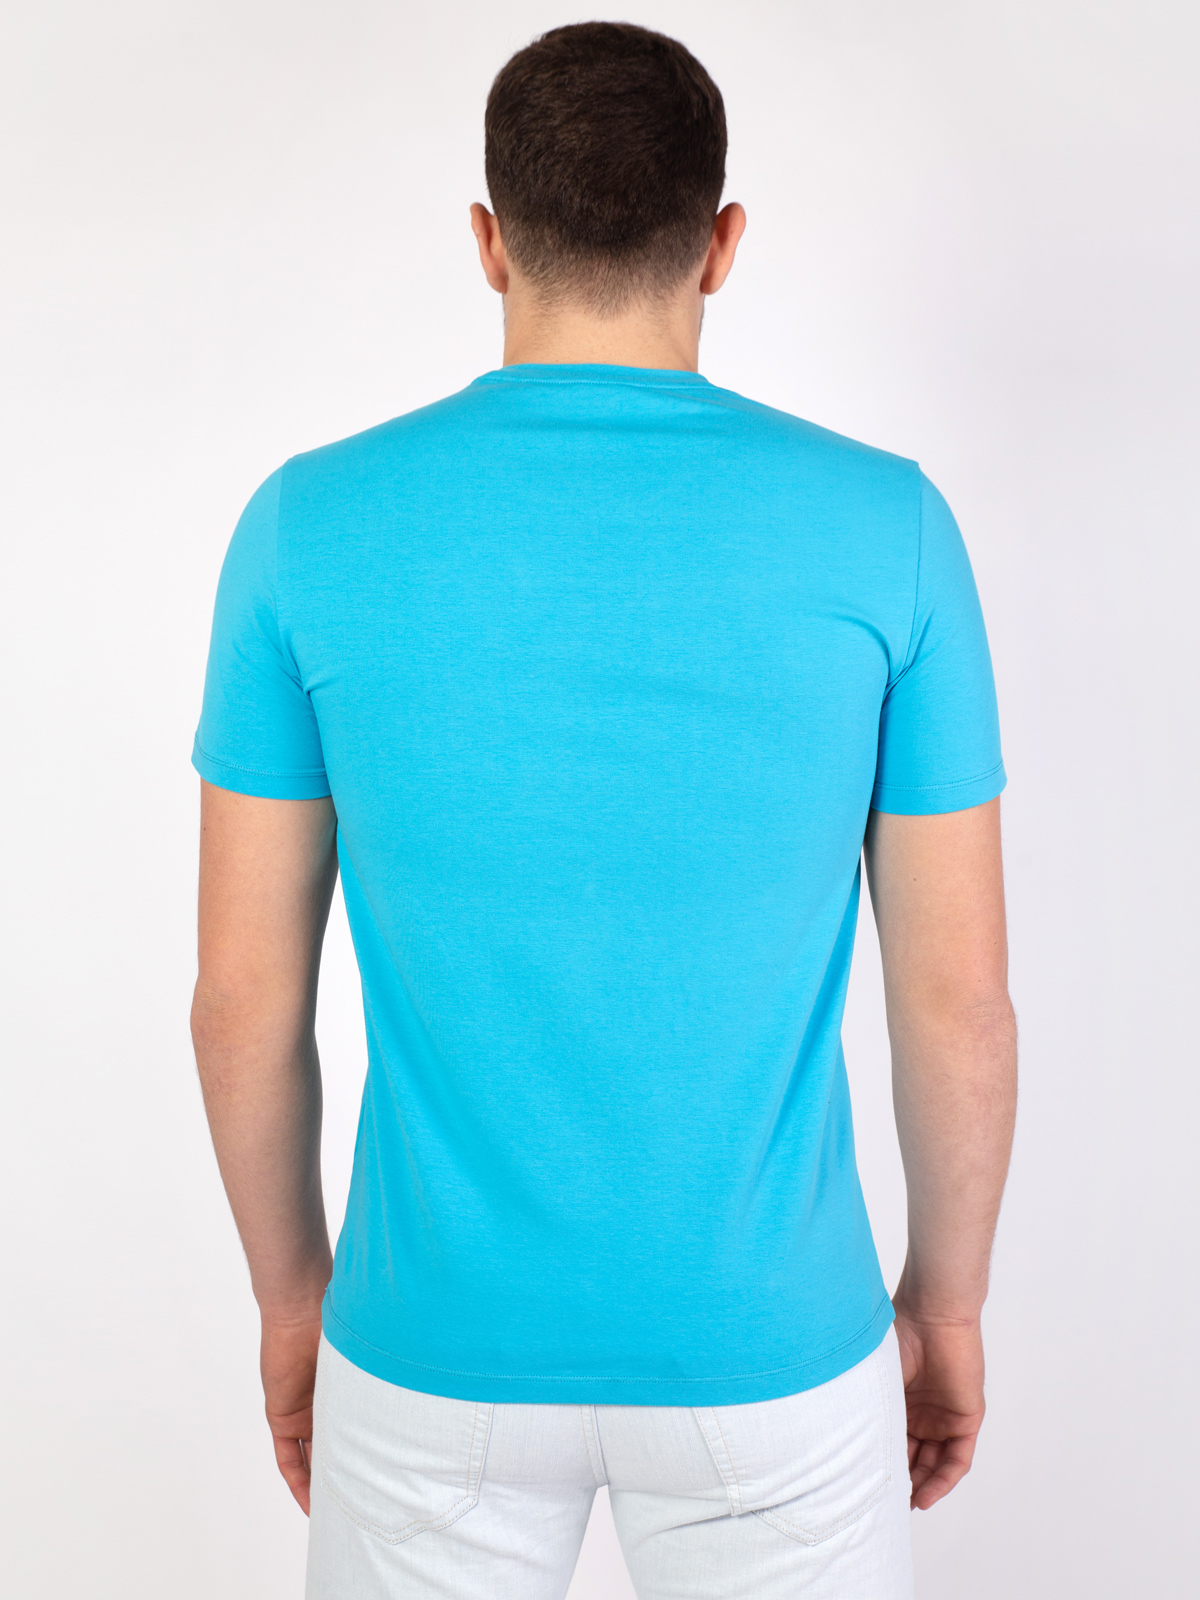 Μπλε μπλουζάκι με στάμπα σε λευκό και μ - 96400 € 16.31 img4